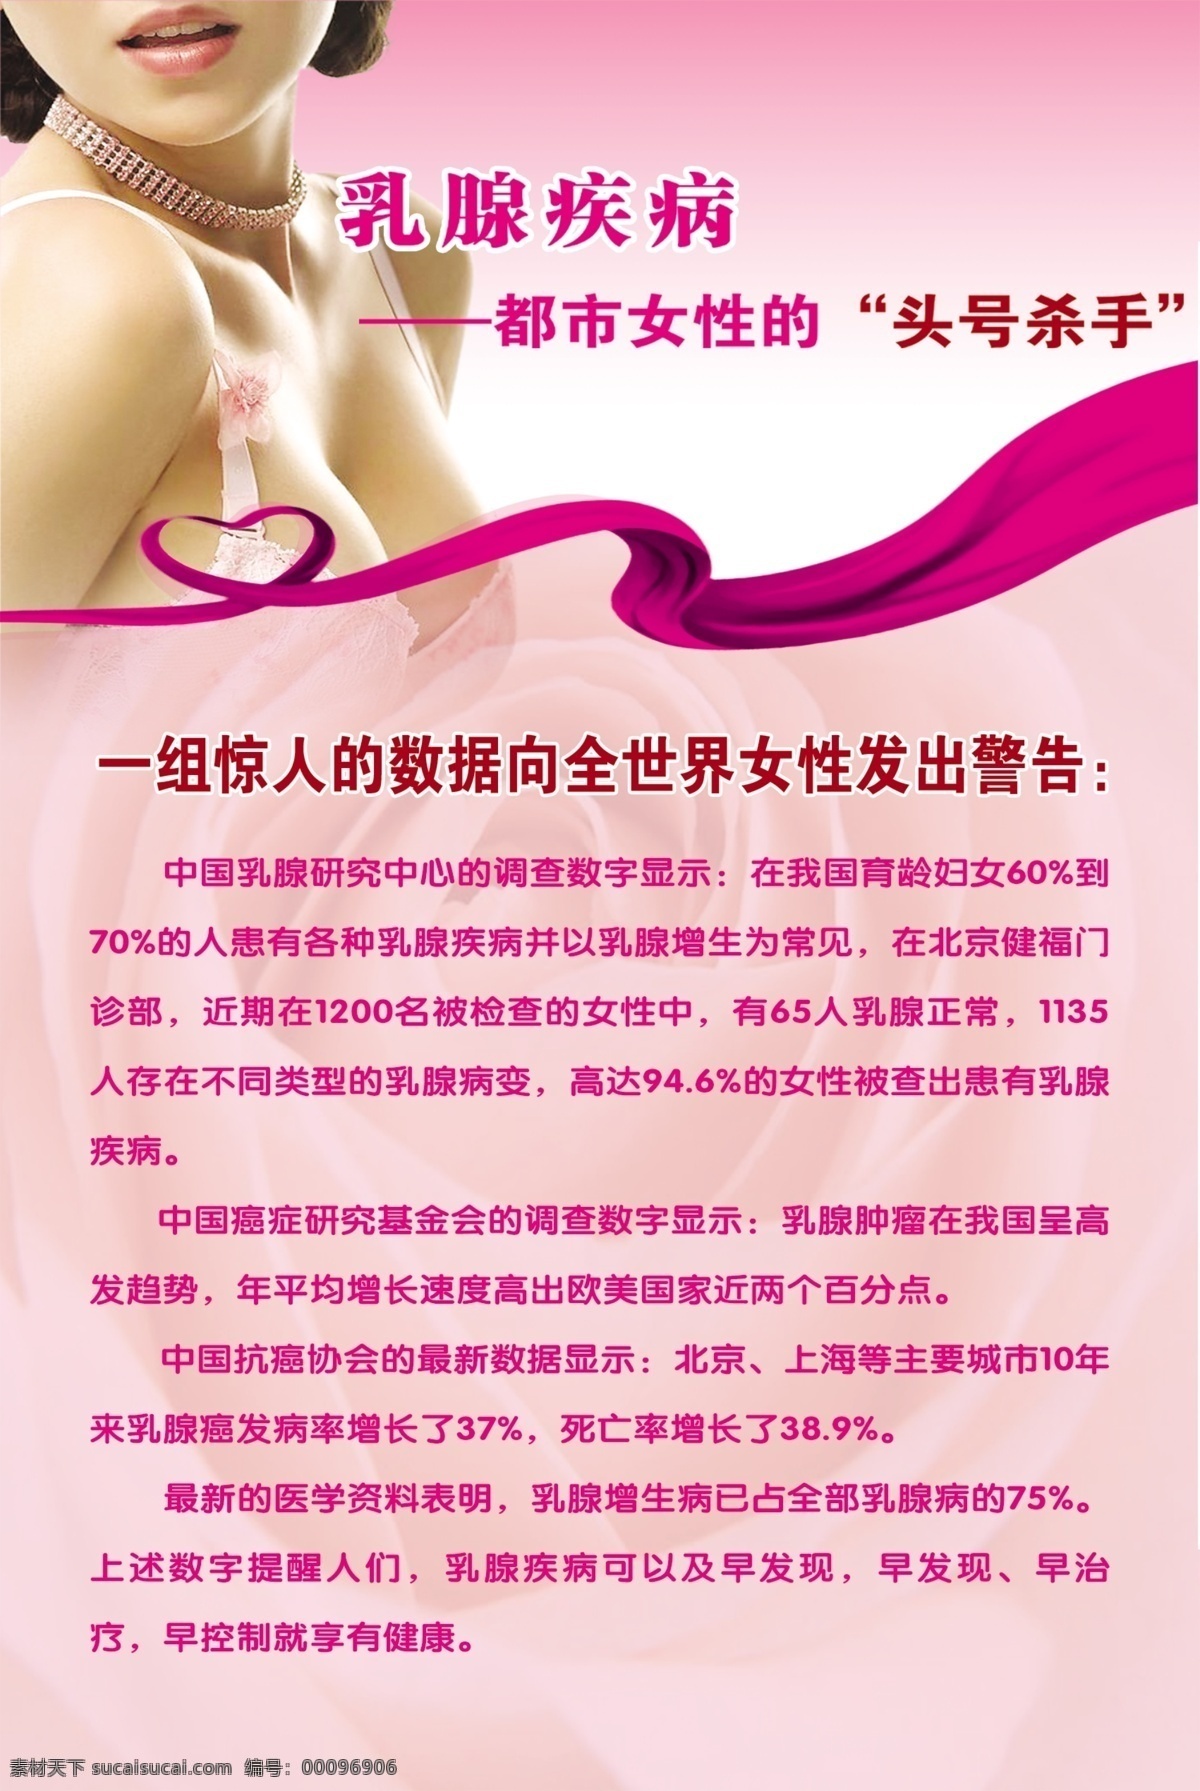 乳腺疾病海报 乳腺 女人 疾病 海波 乳腺疾病 广告设计模板 源文件